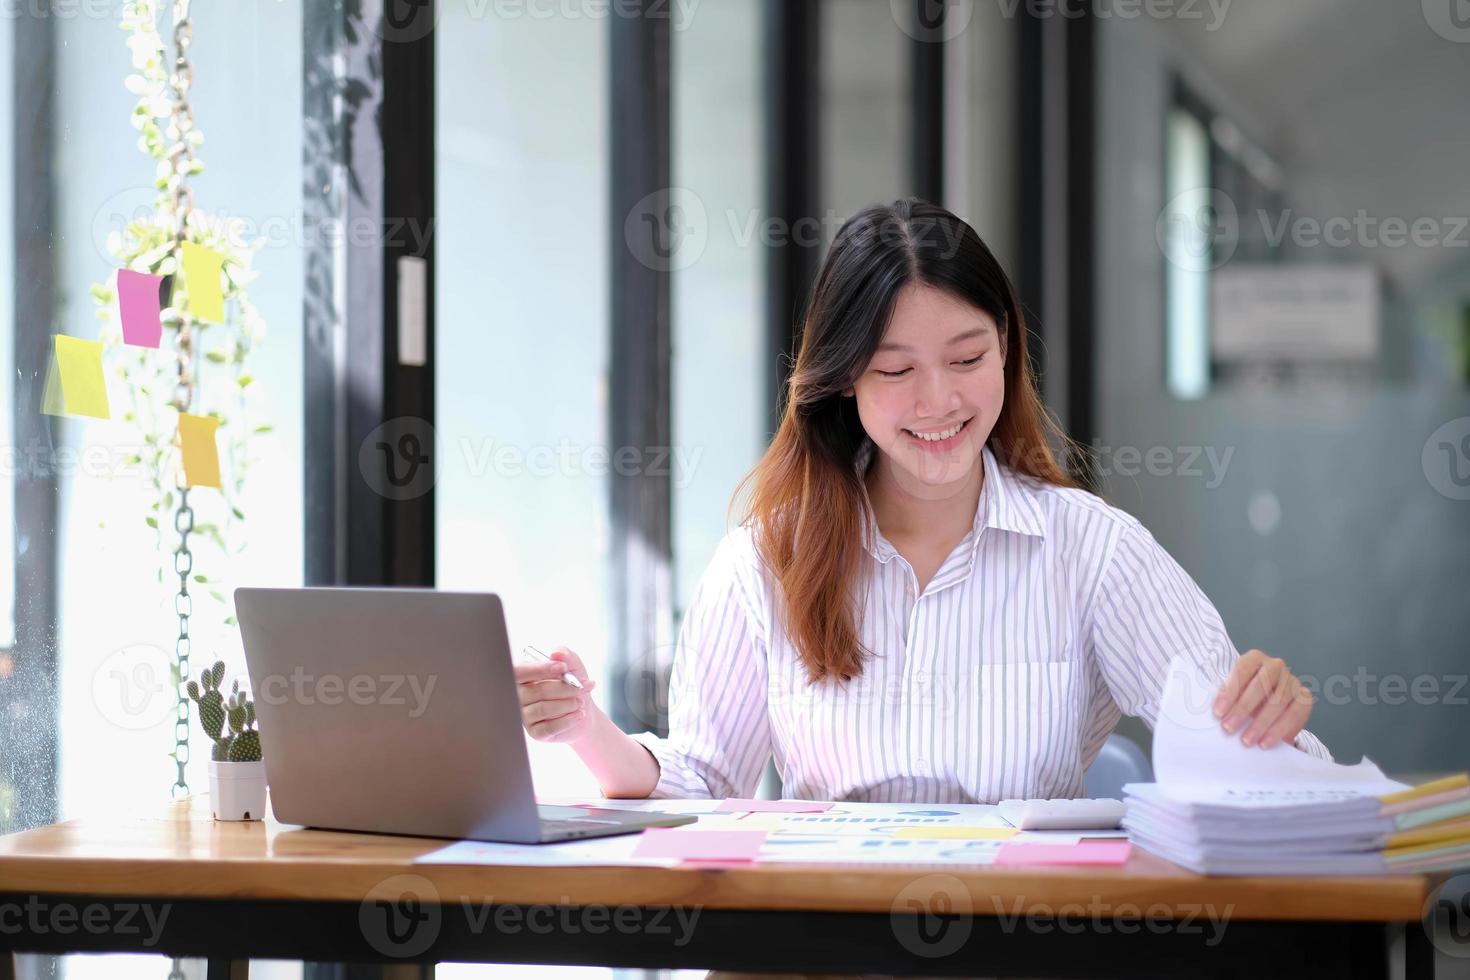 souriante jeune femme d'affaires asiatique travaillant avec une calculatrice, un document commercial et un ordinateur portable, un inspecteur financier et une secrétaire faisant un rapport, un document de vérification du service des recettes internes. photo